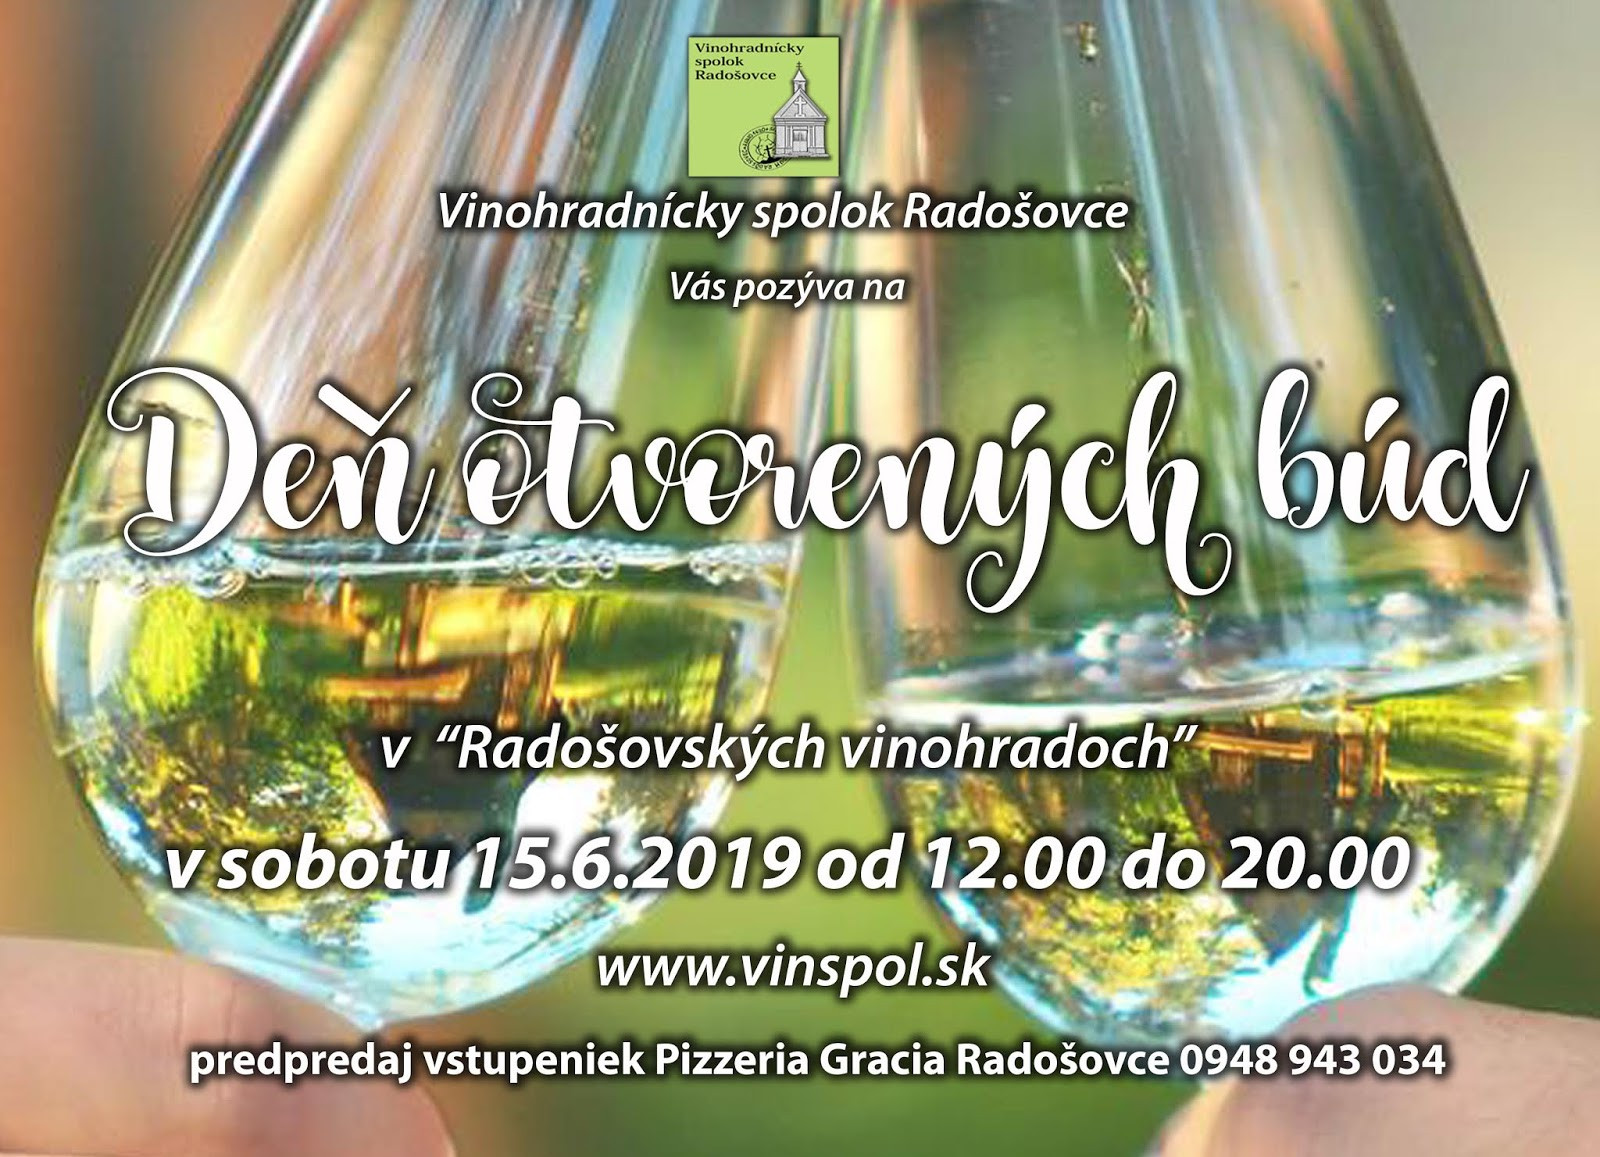 Deň otvorených búd v Radošovských vinohradoch (15.6.2019)